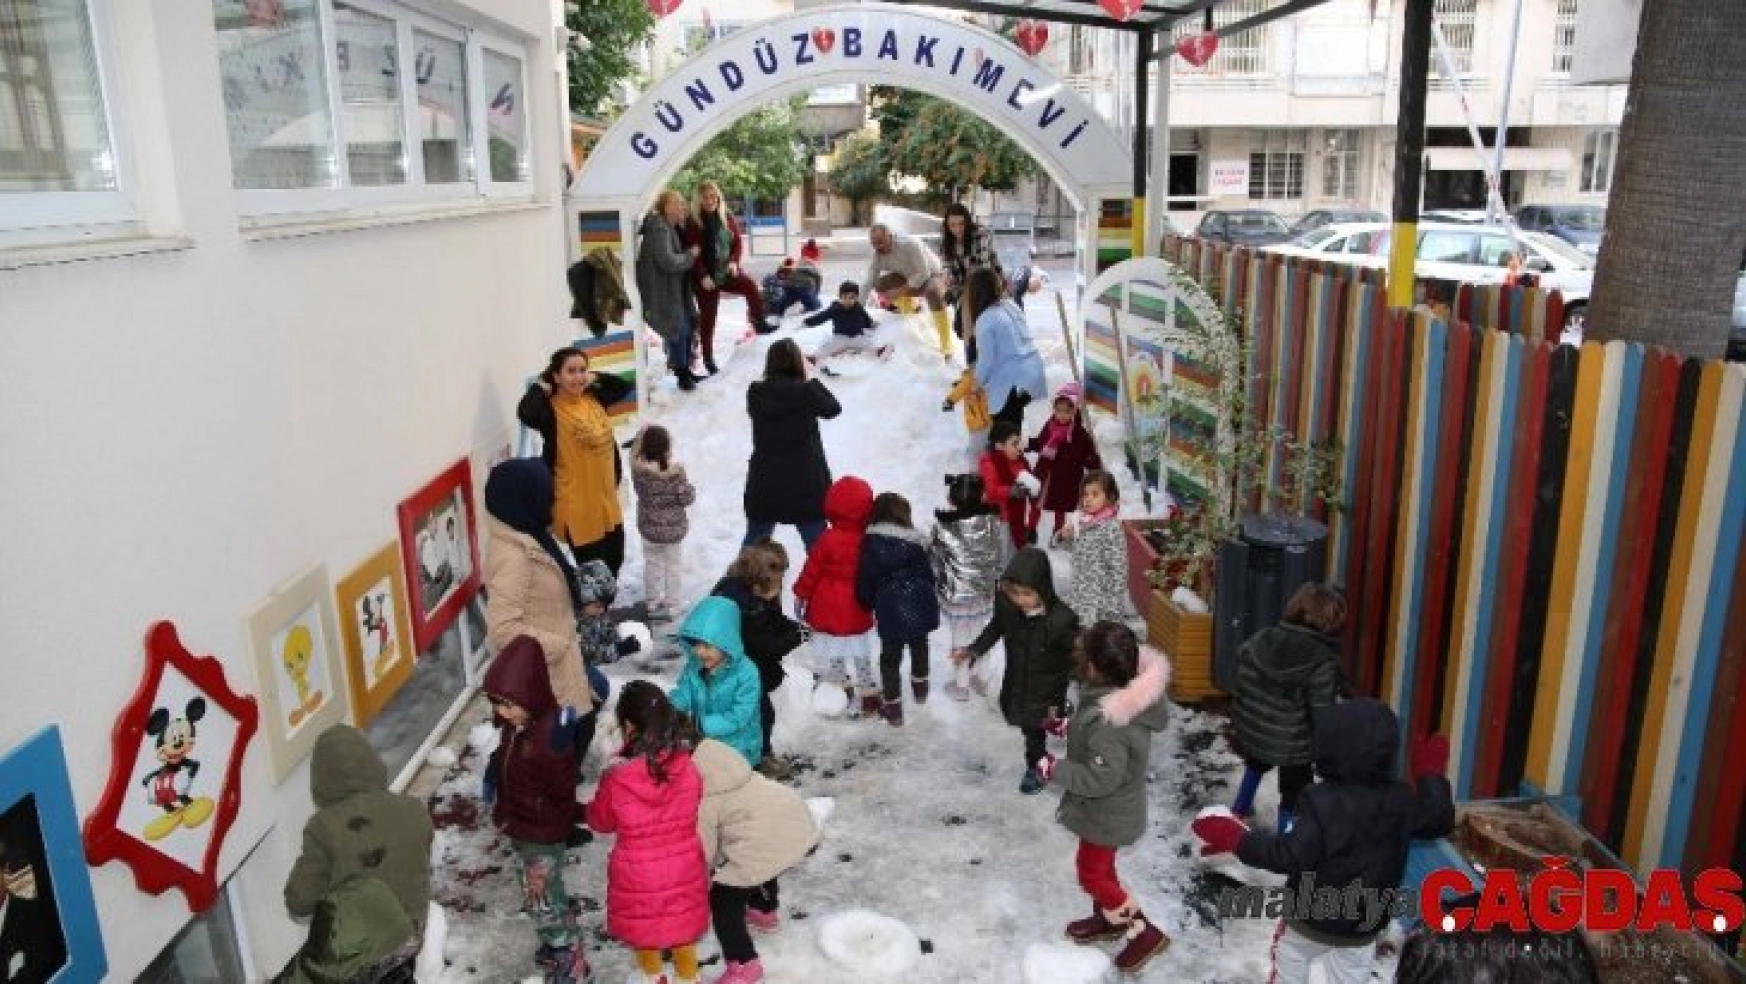 Tatile Adana'nın göbeğinde karla oynayarak girdiler